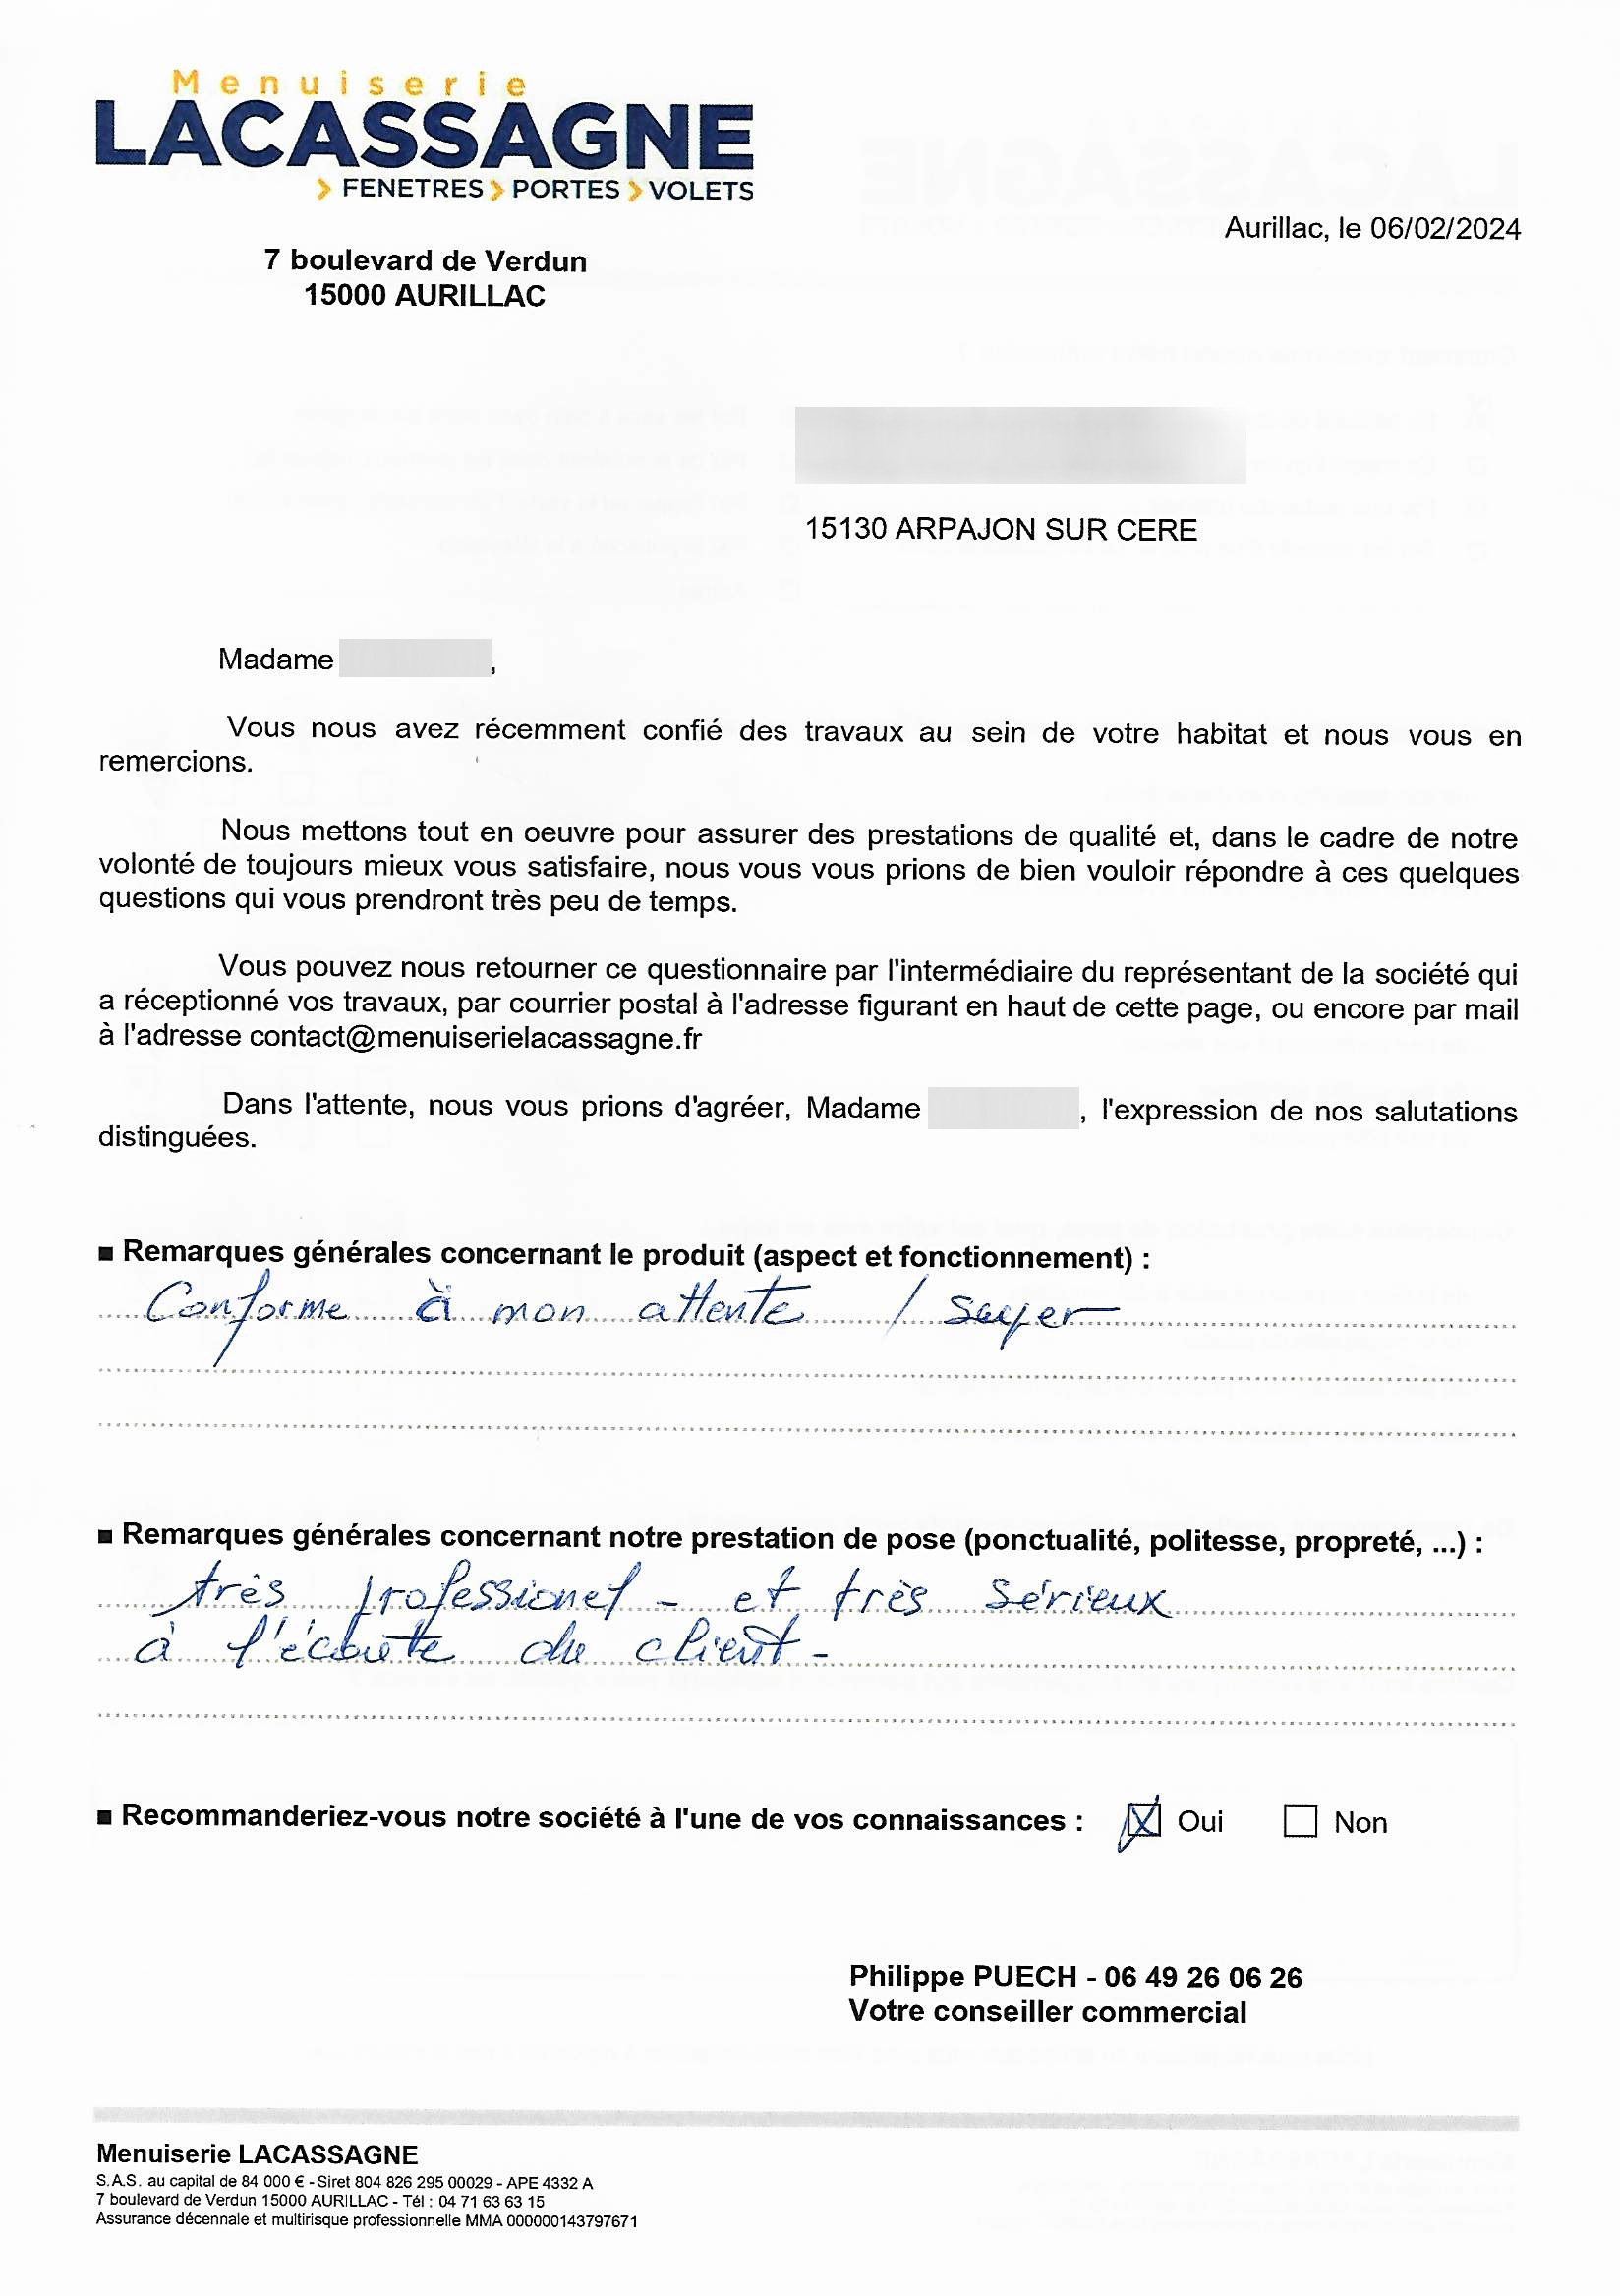 Menuiserie LACASSAGNE à AURILLAC - SATISFACTION CLIENT 2024-05-03